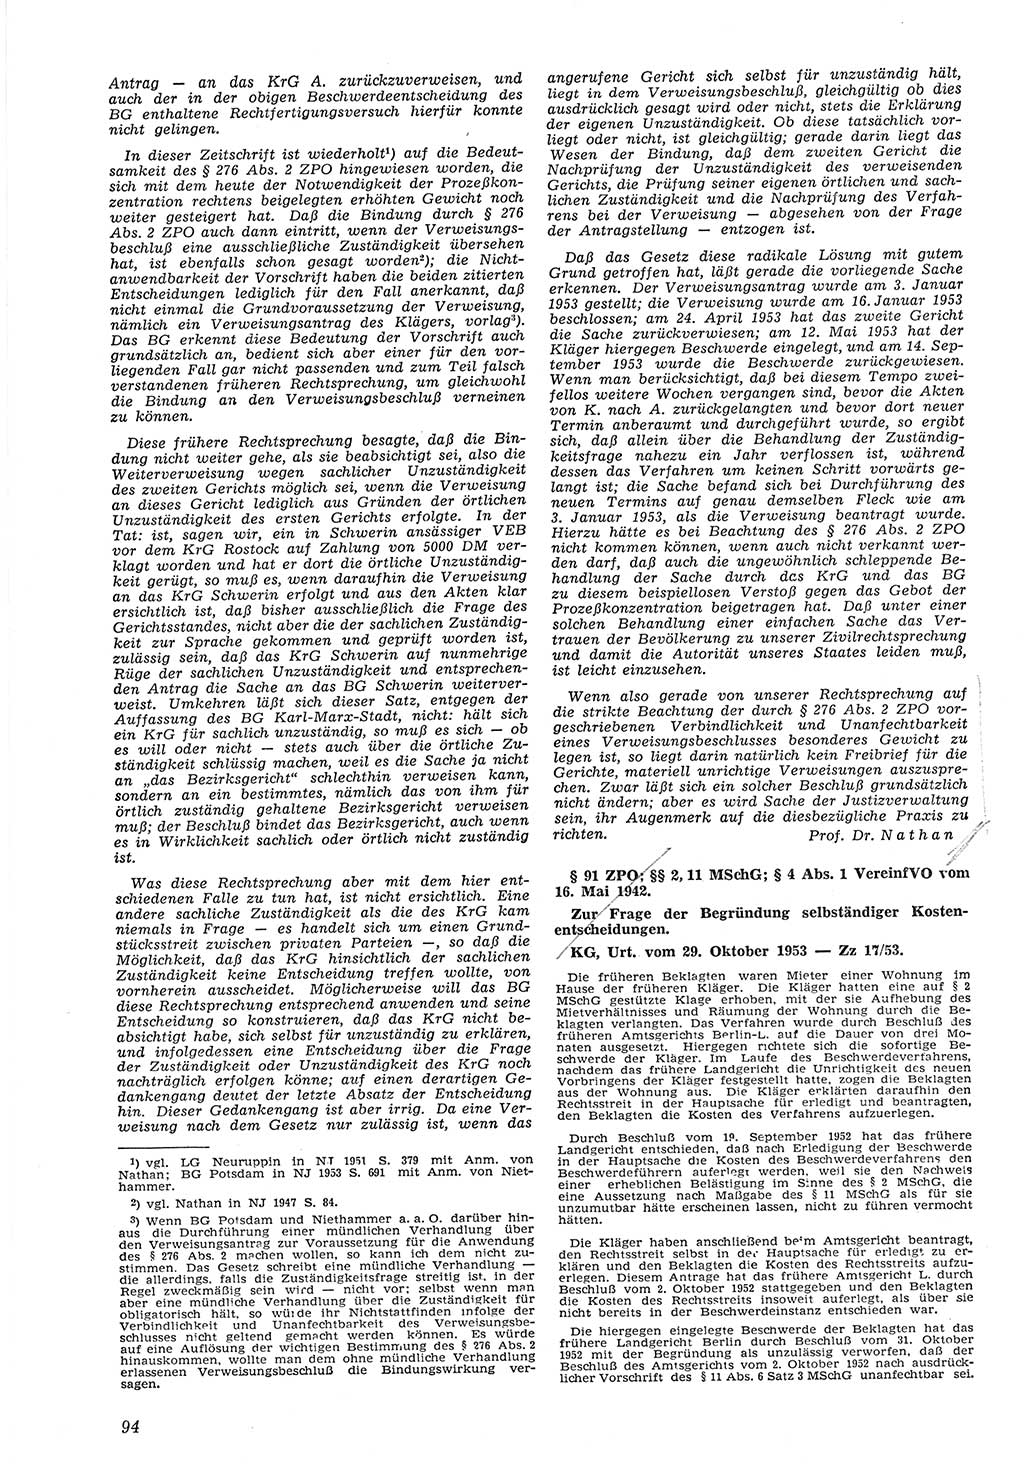 Neue Justiz (NJ), Zeitschrift für Recht und Rechtswissenschaft [Deutsche Demokratische Republik (DDR)], 8. Jahrgang 1954, Seite 94 (NJ DDR 1954, S. 94)